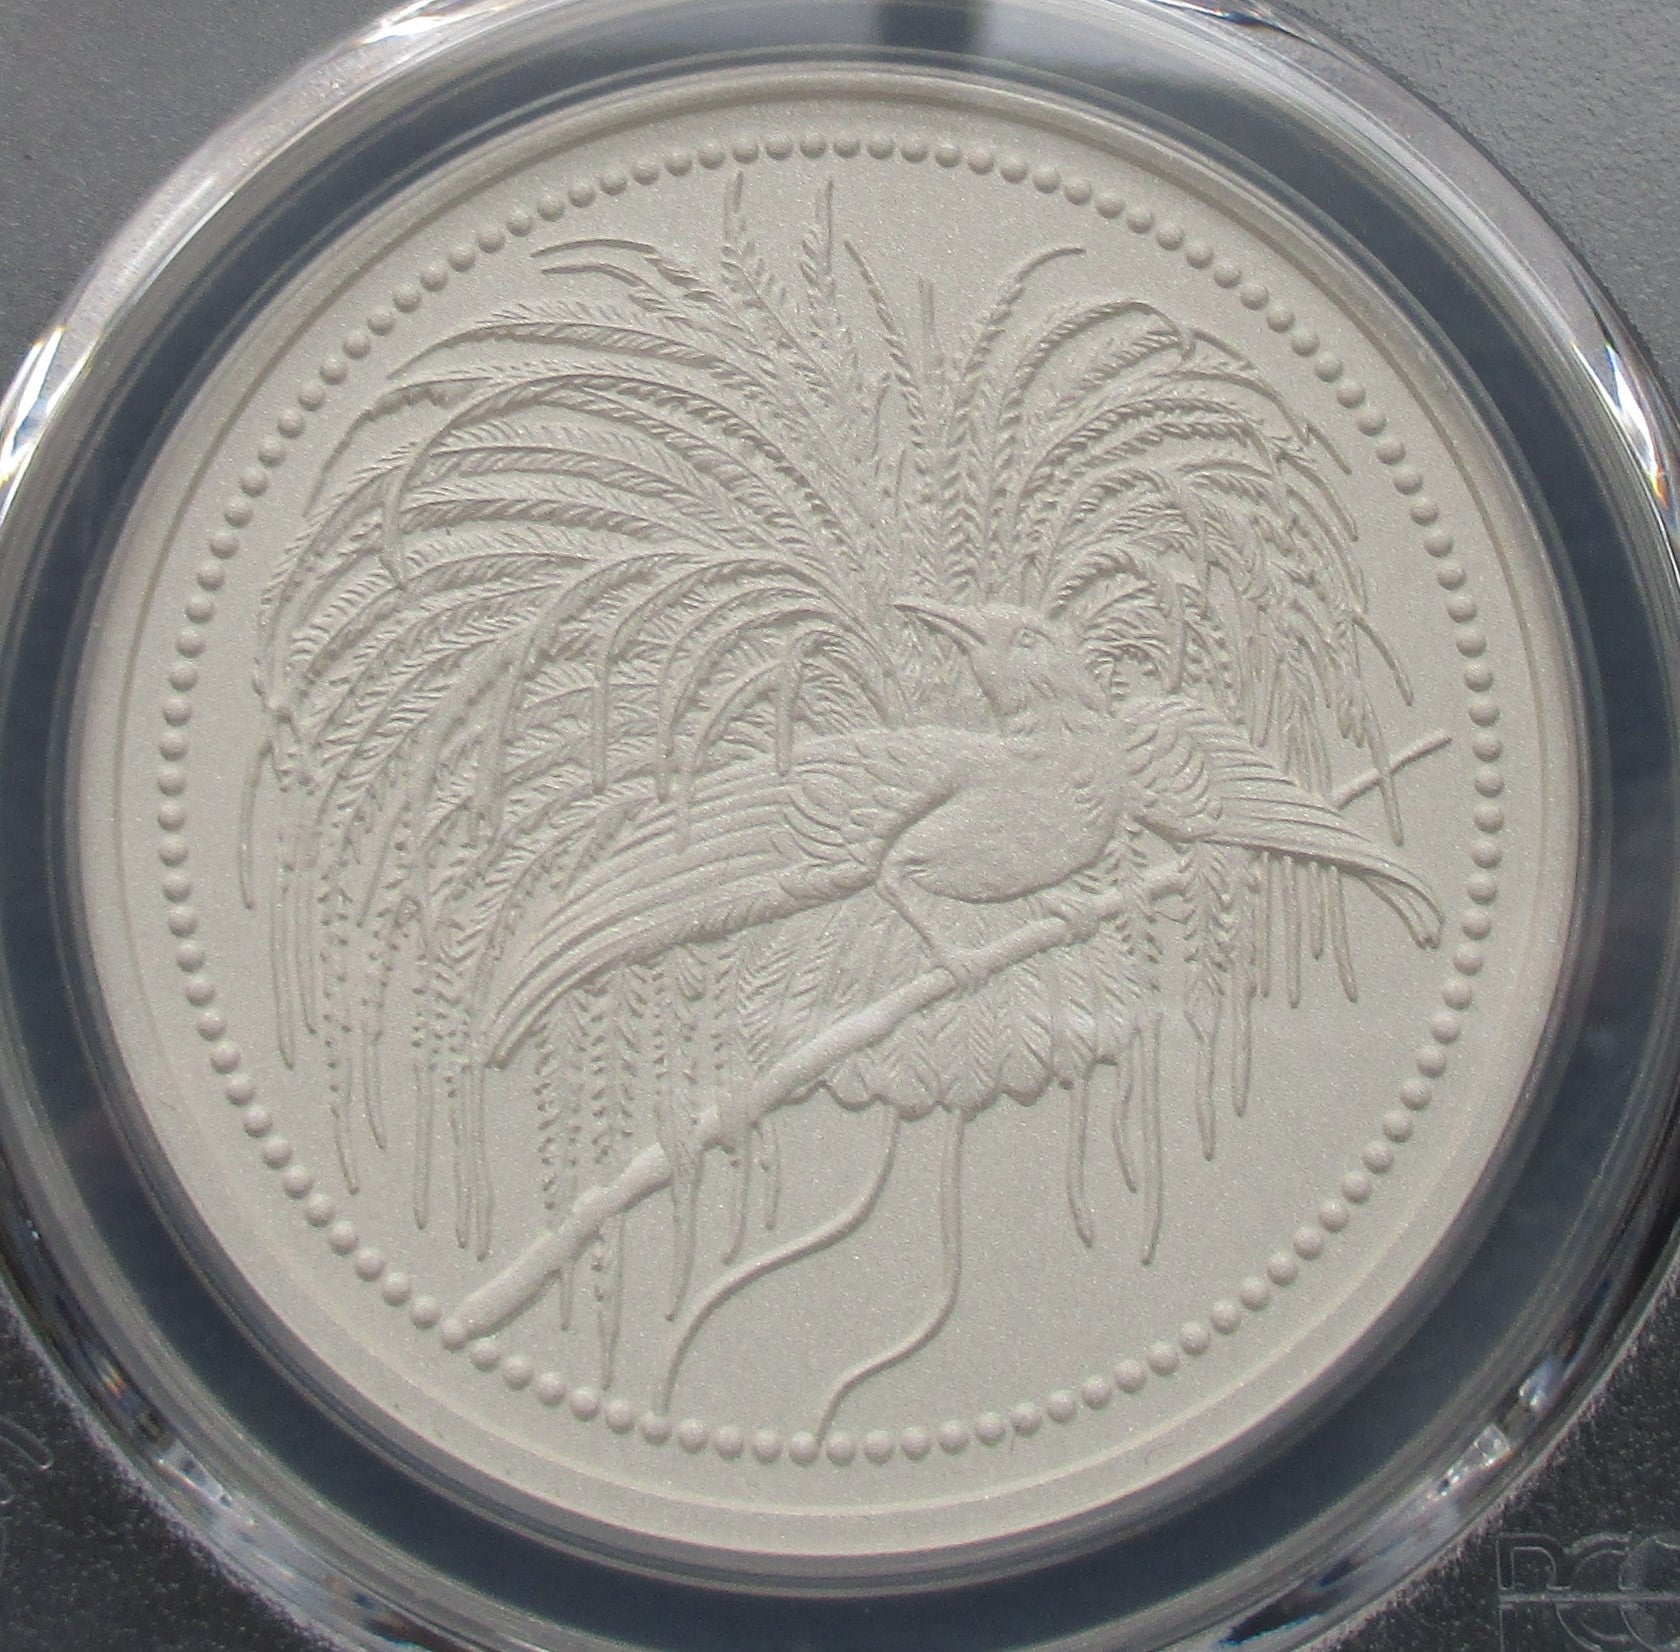 極楽鳥のモダン銀貨について | teruri20のアンティークコイン収集記